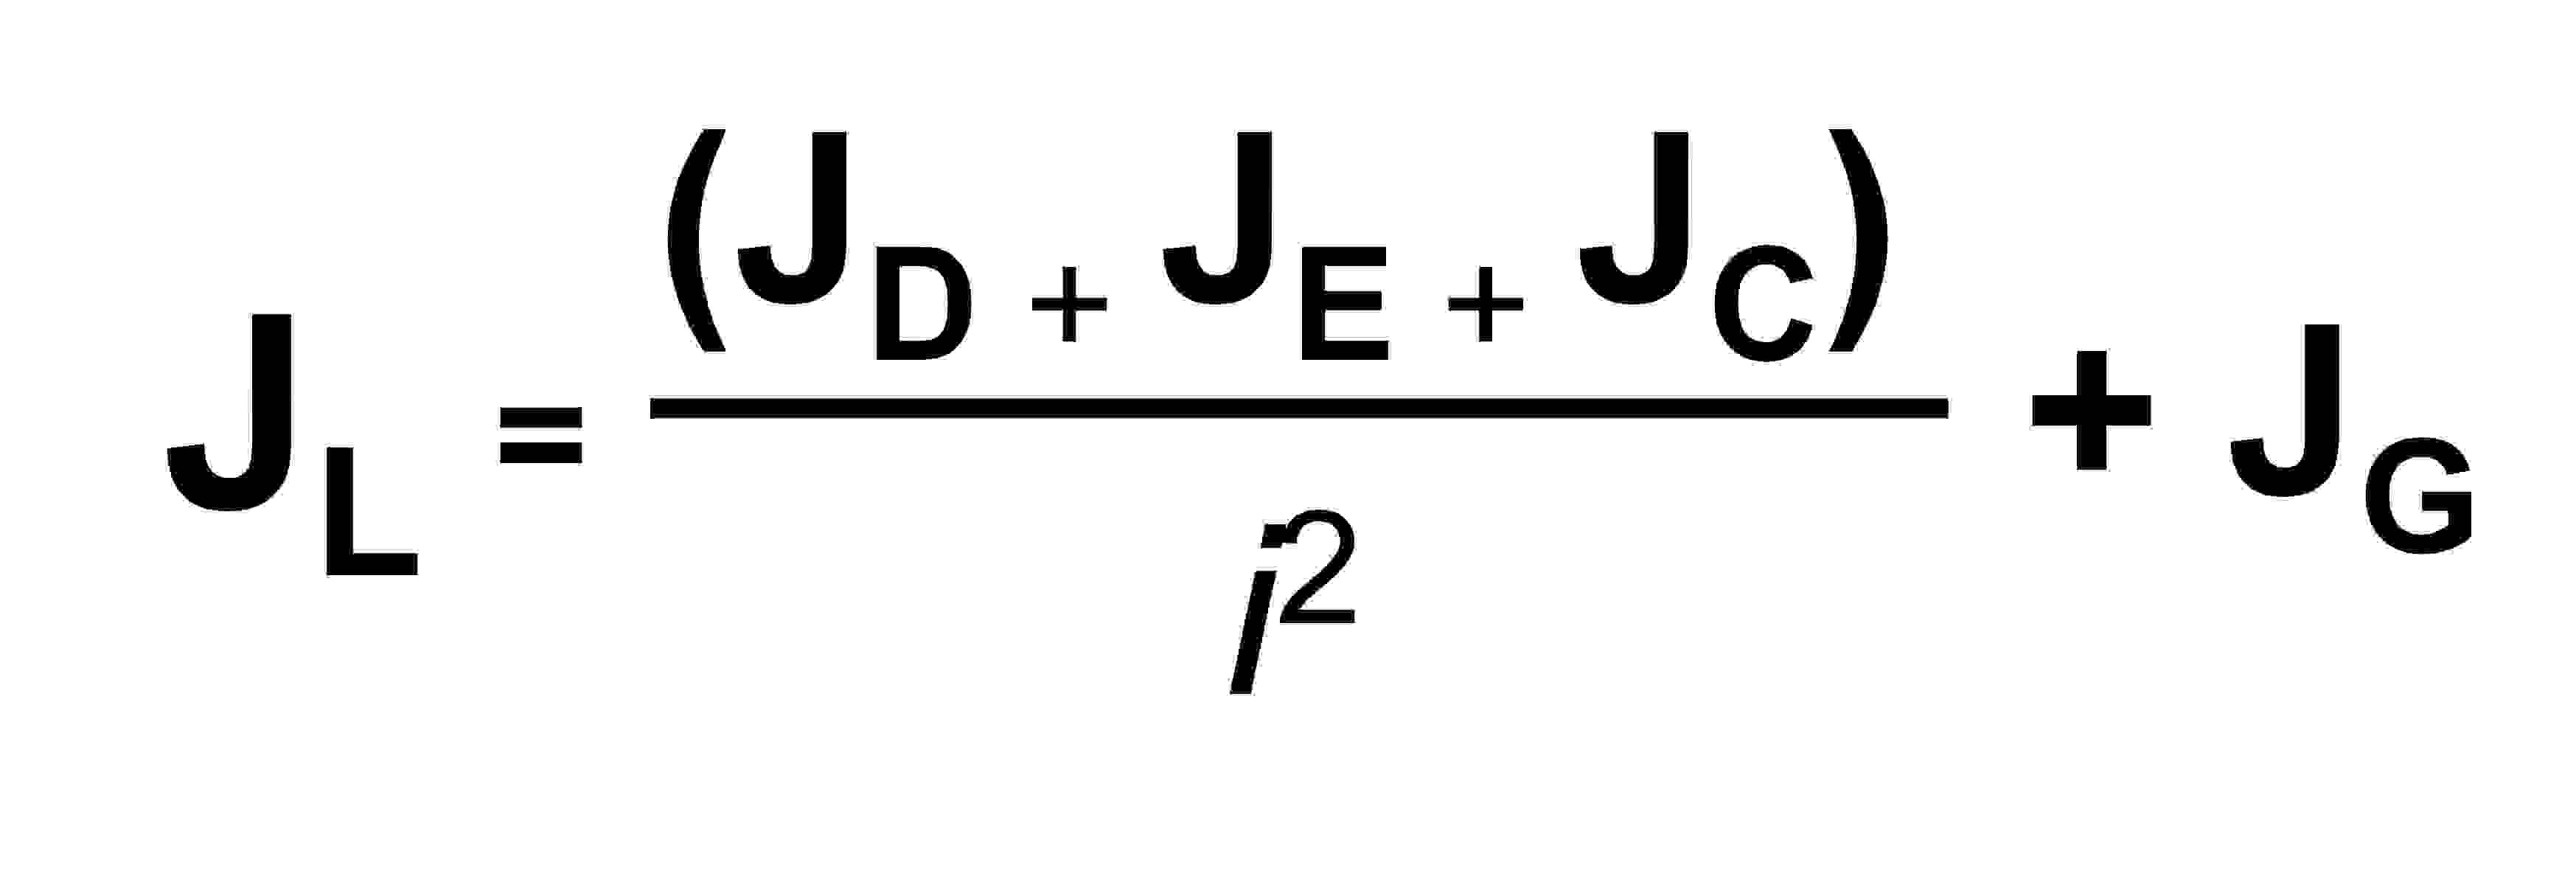 Fórmula para calcular la relación de inercia (con reductor)